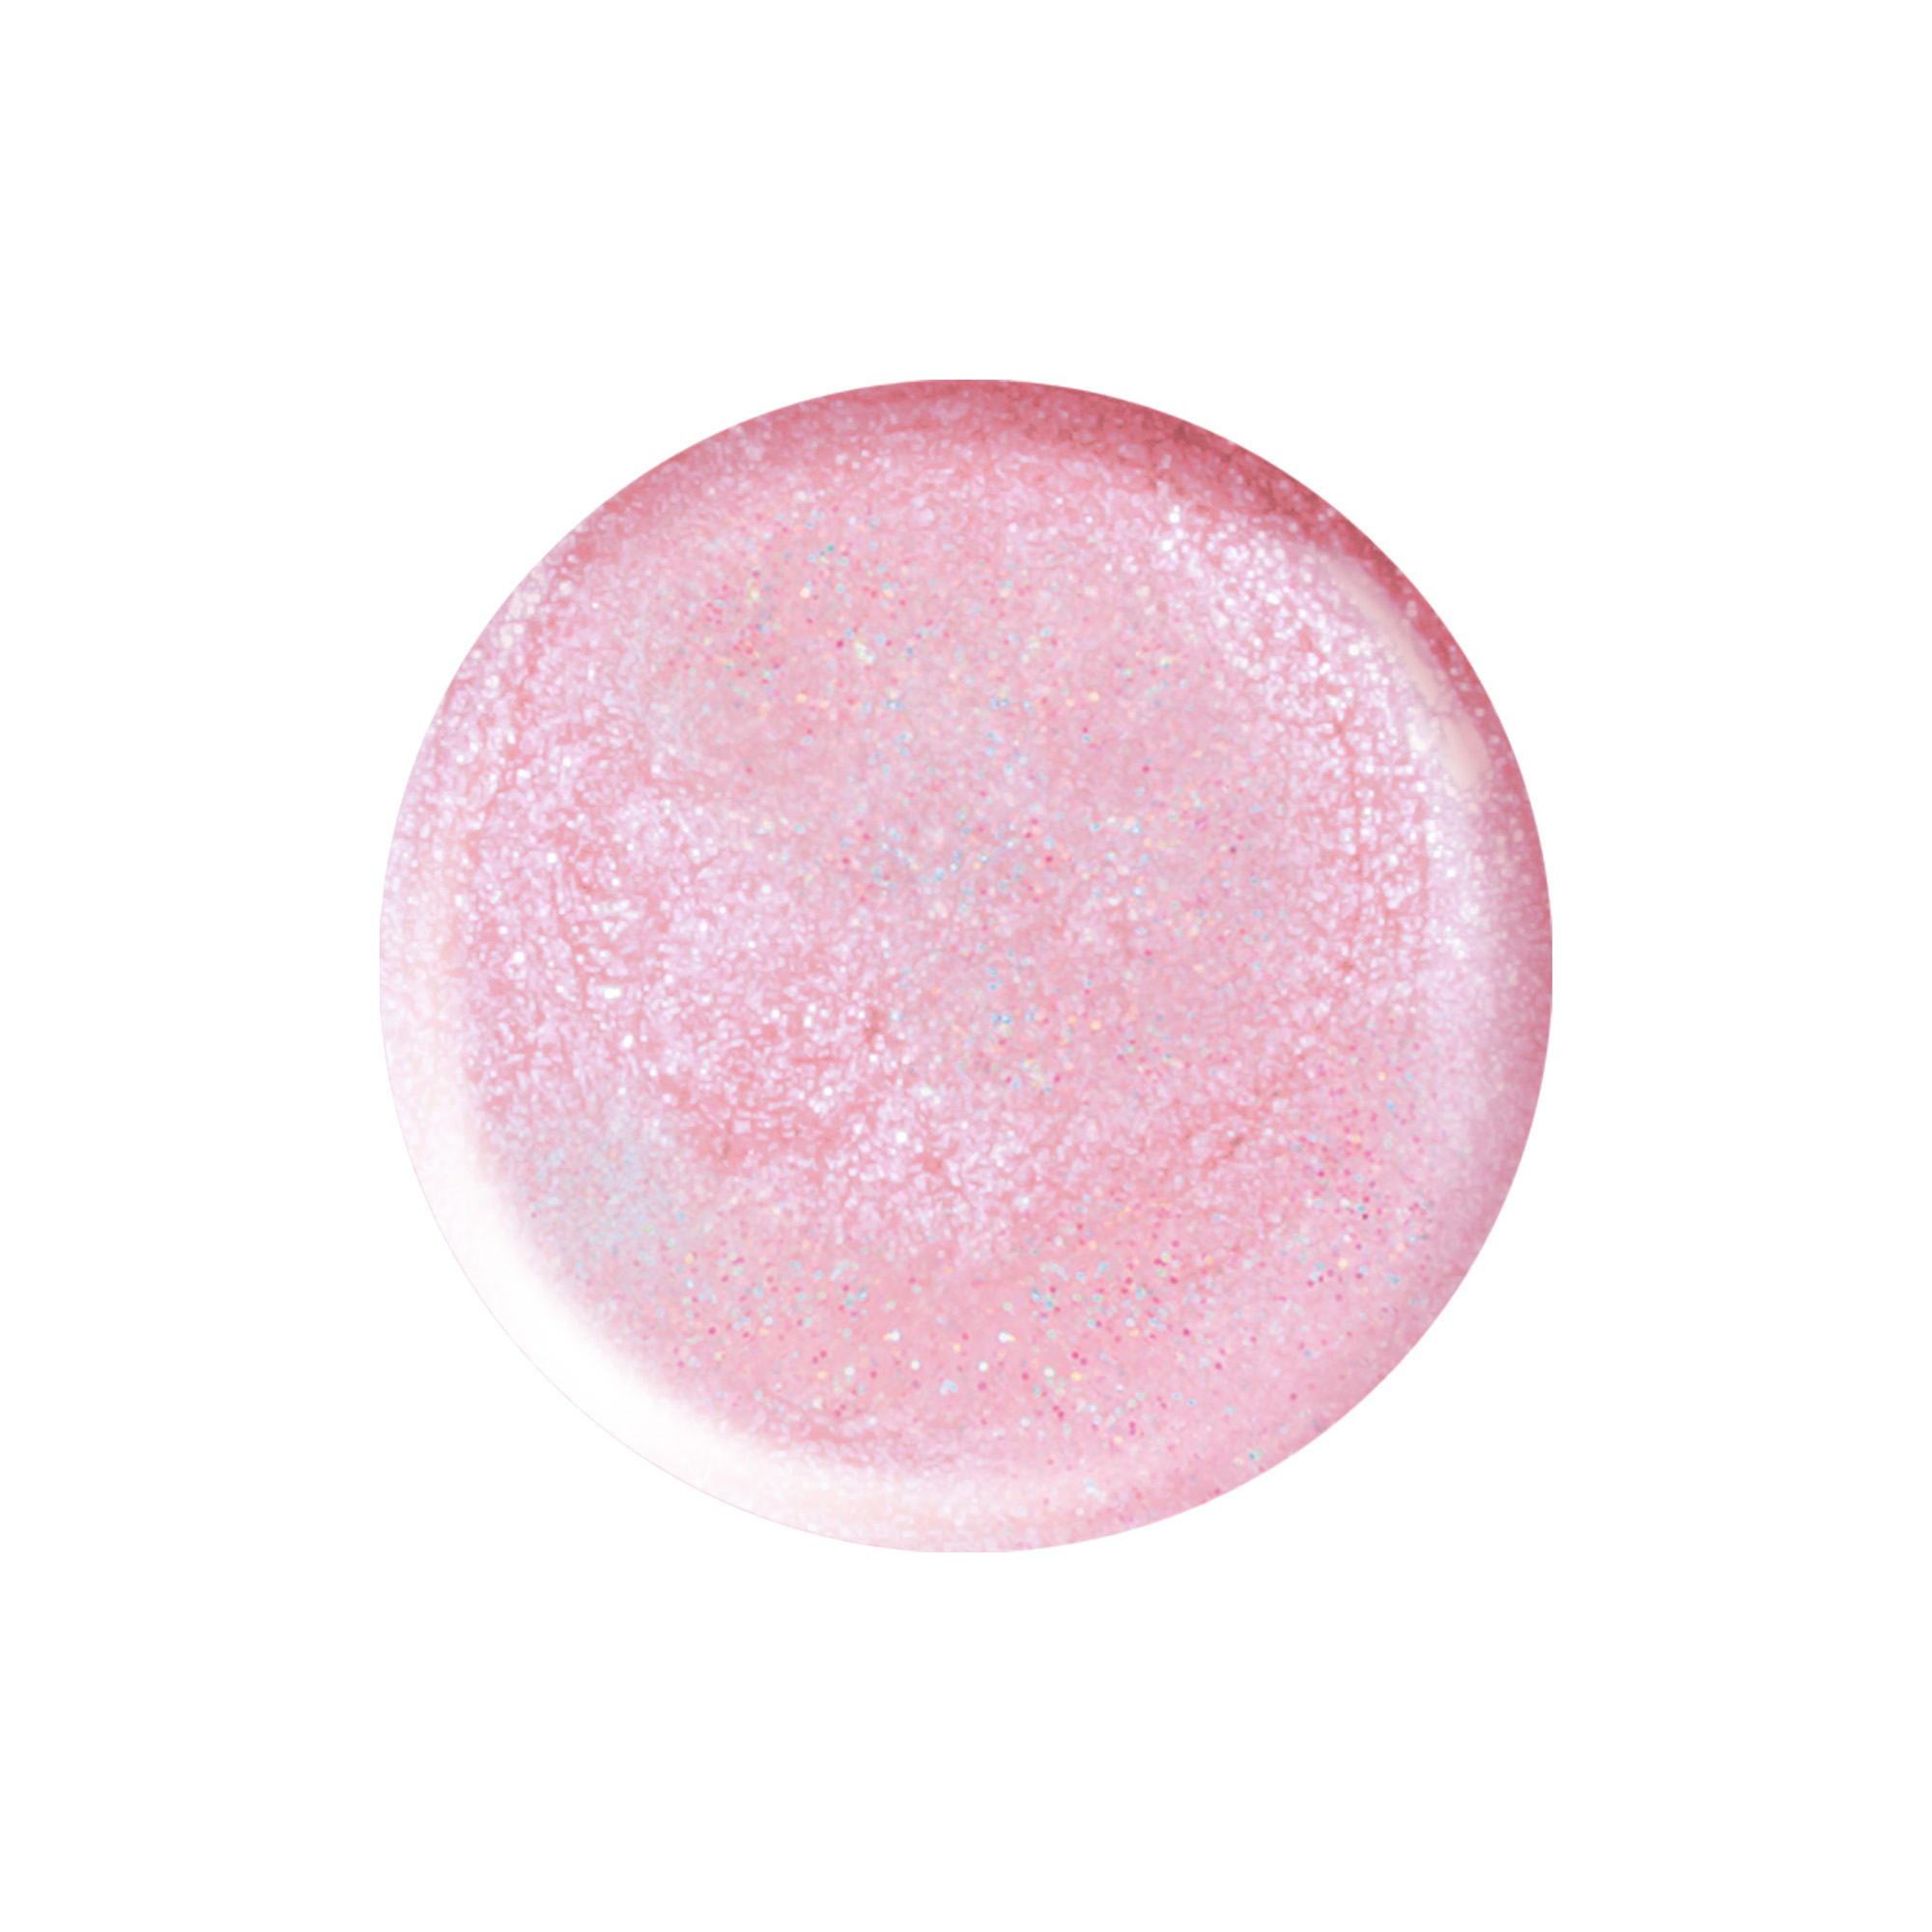 Nail polish So Sweet light pink metallic 10 ml TNS